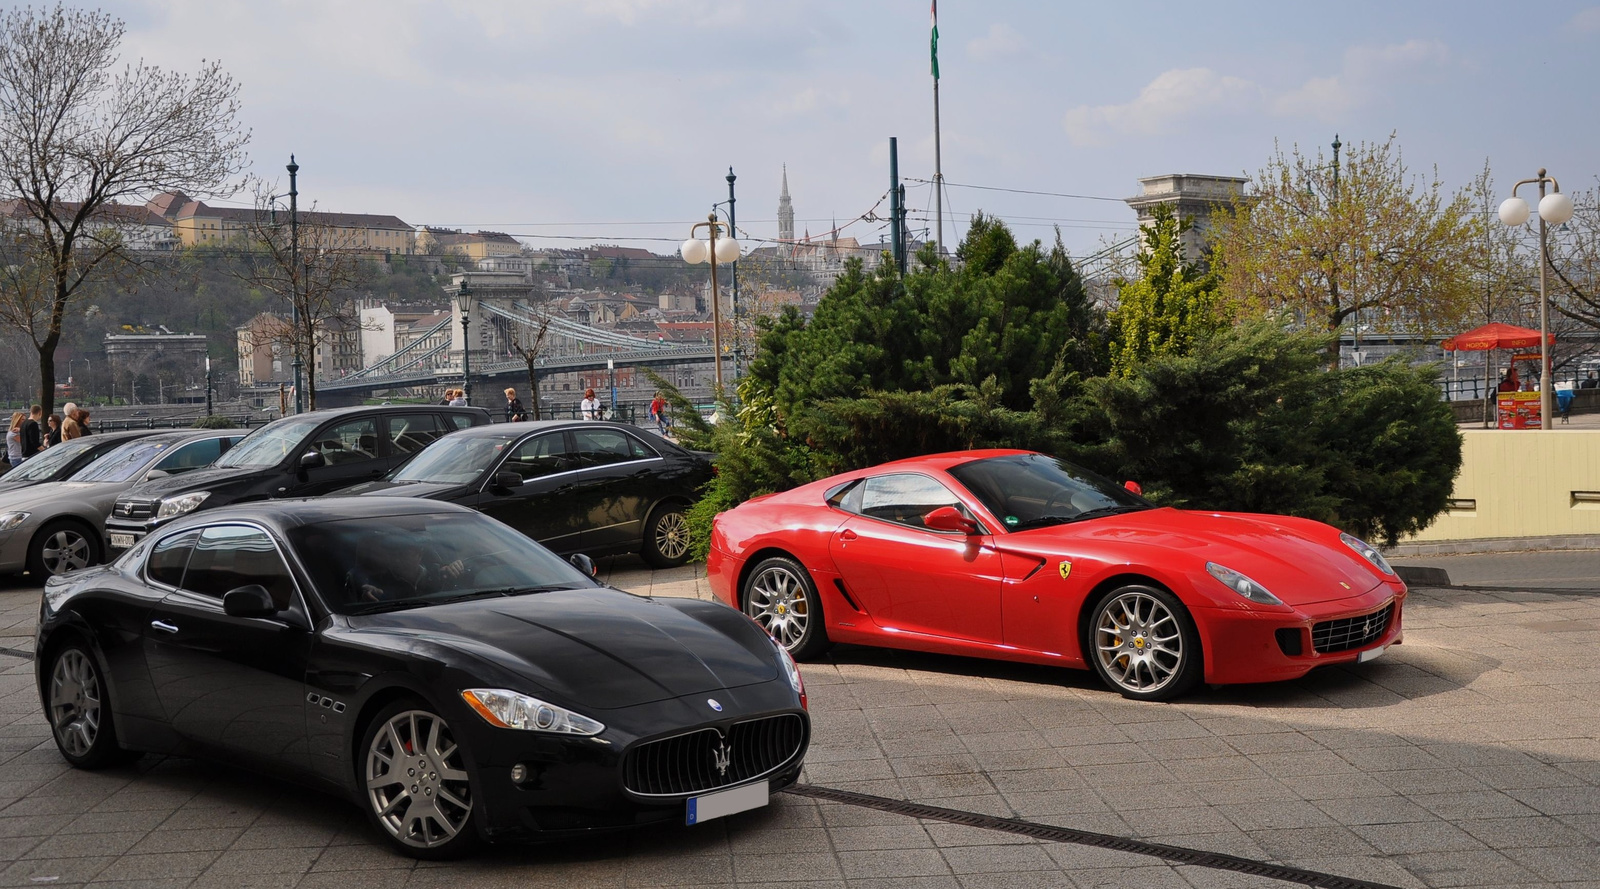 Dupla 180 GranTurismo & Ferrari 599